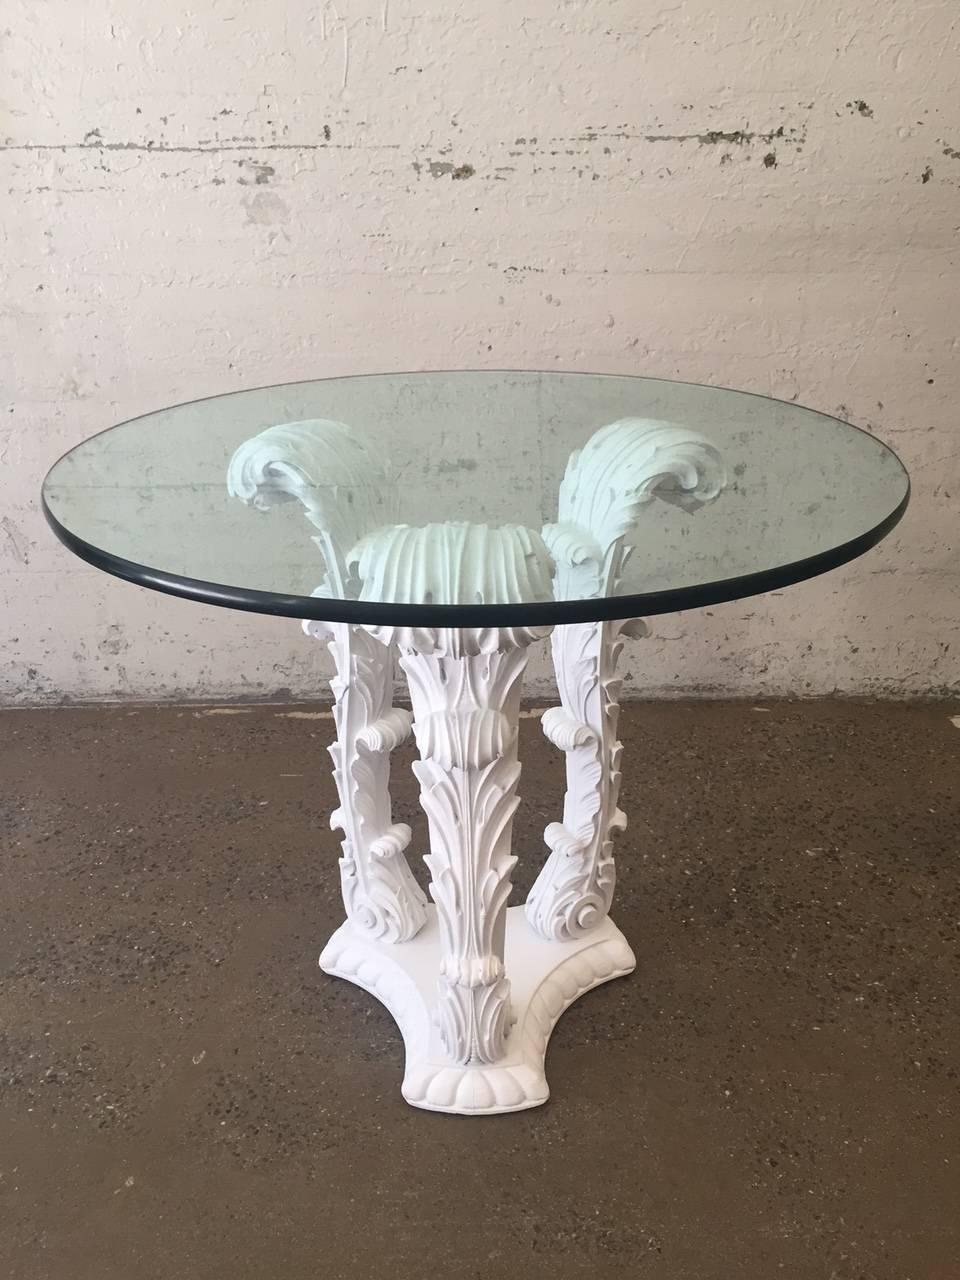 Ein Paar geschnitzte Holztische im Stil von Serge Roche. Die Tische sind weiß lackiert und stehen auf einem massiven, geschnitzten Holzsockel.